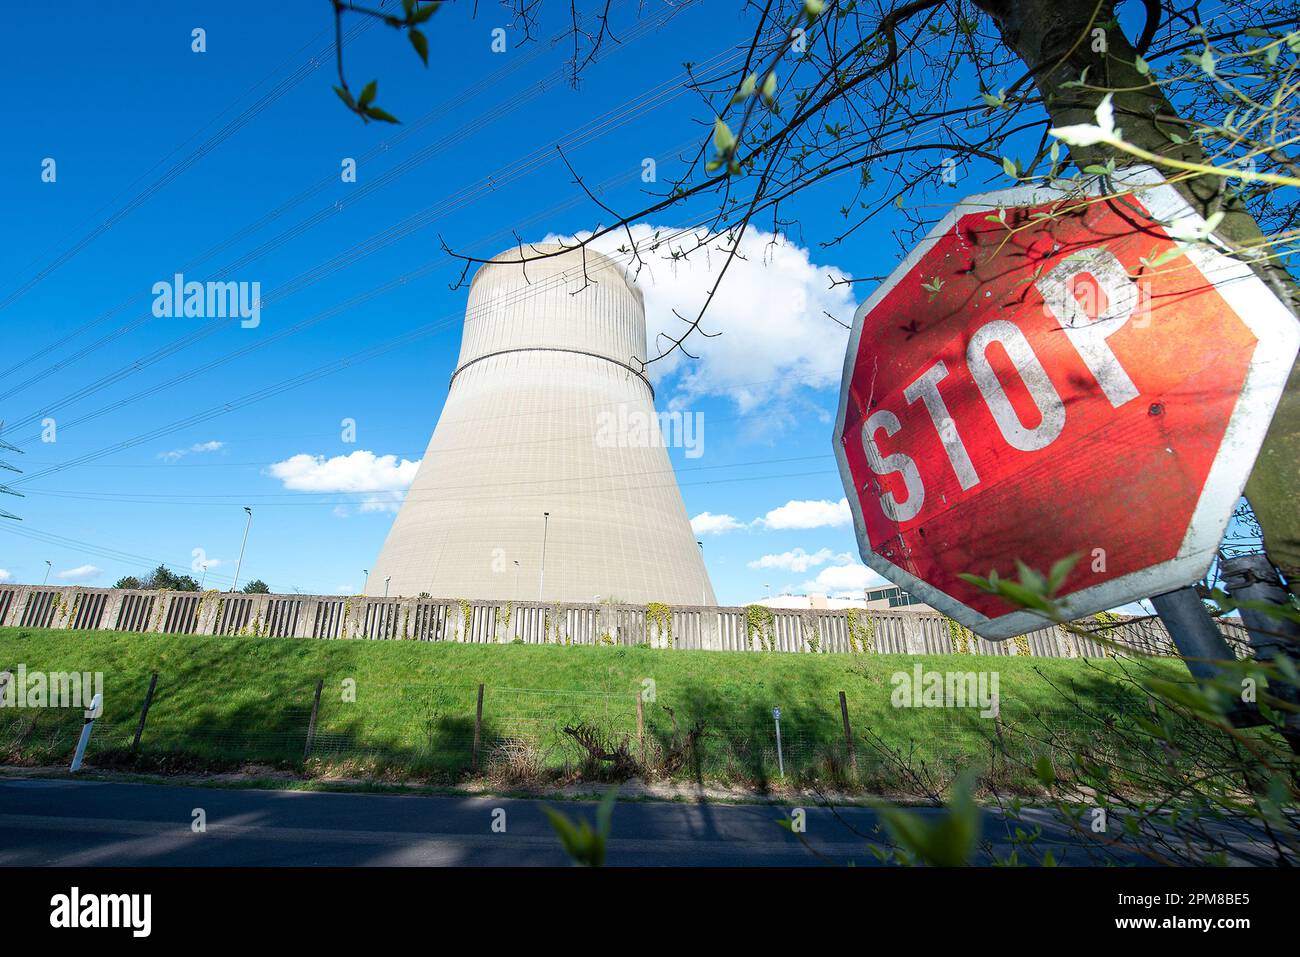 Atomkraftwerk in Lingen / RWE/ Emsland / Niedersachsen / Deutschland / centrale nucleare / npp / Germania Foto Stock